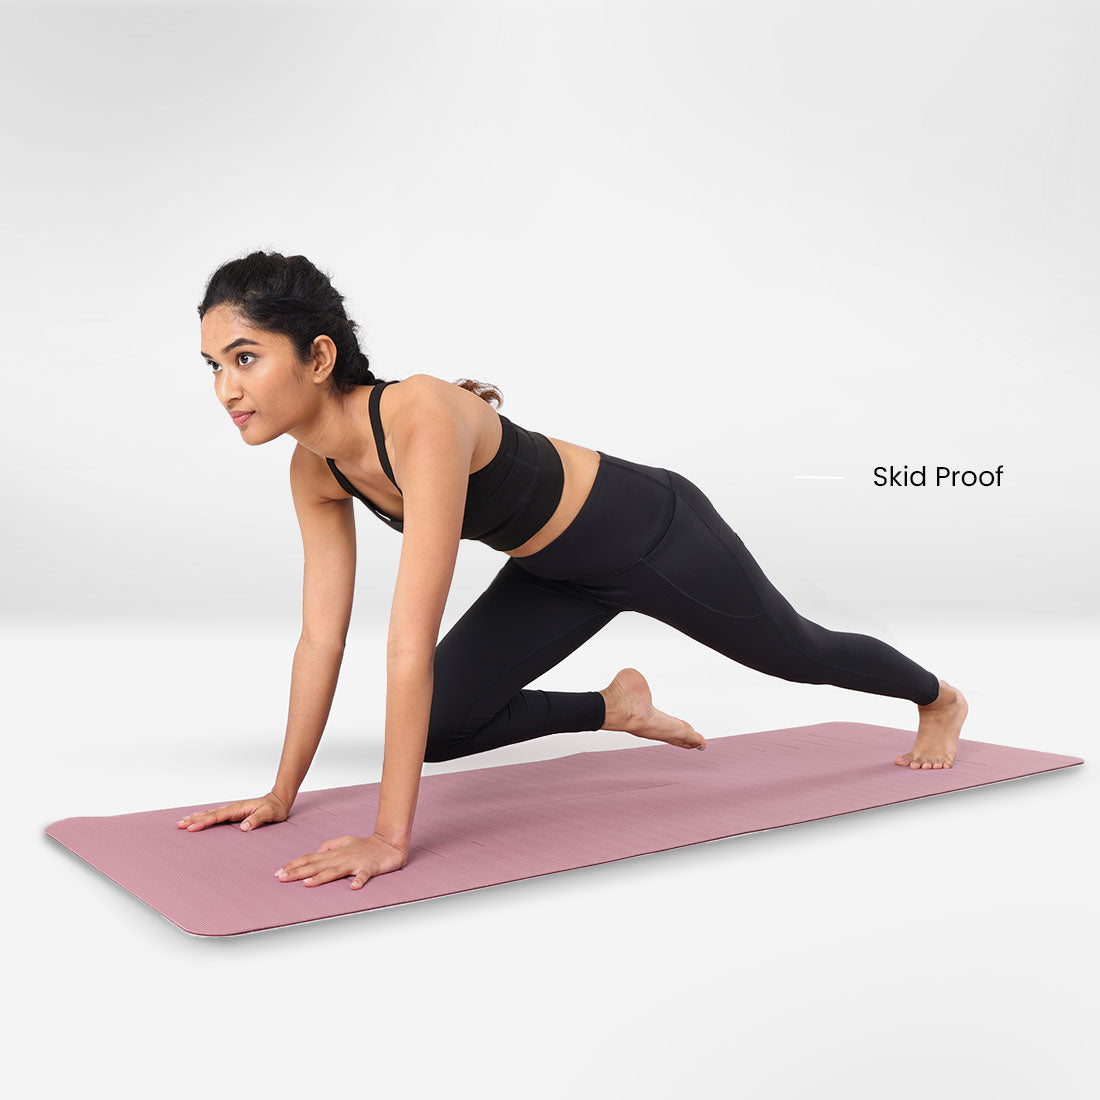 Anti-Slip Reversible Yoga Mat with Alignment Markings